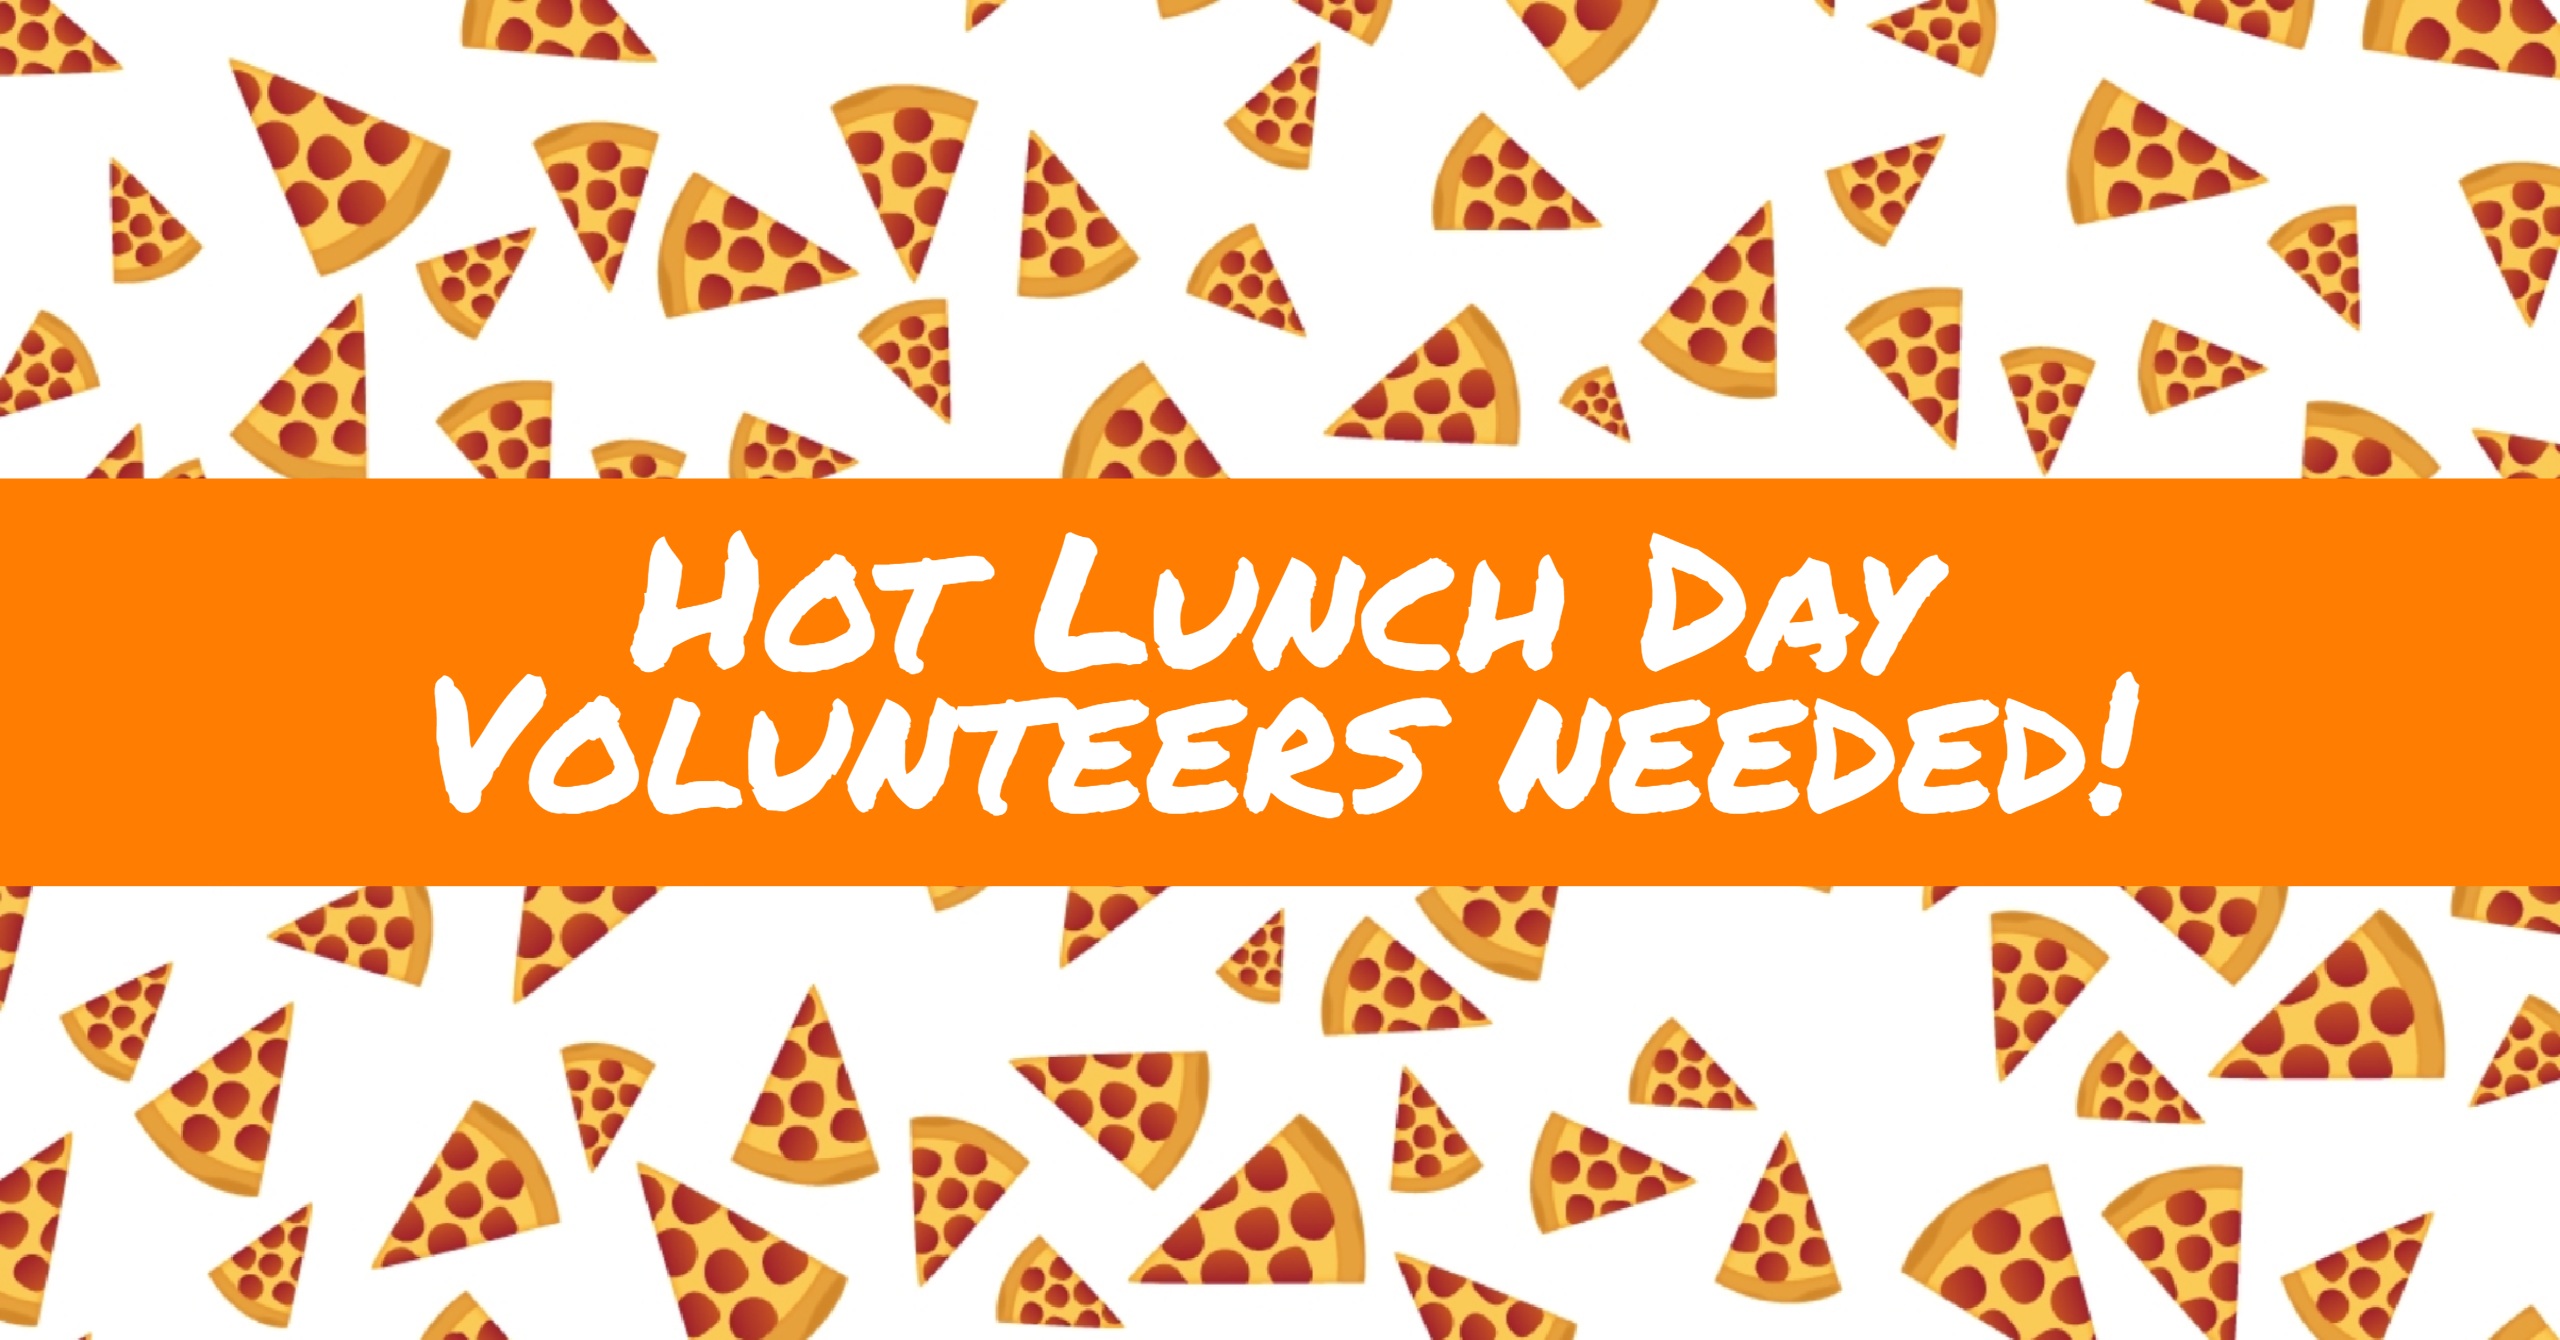 Hot Lunch Volunteers Needed!